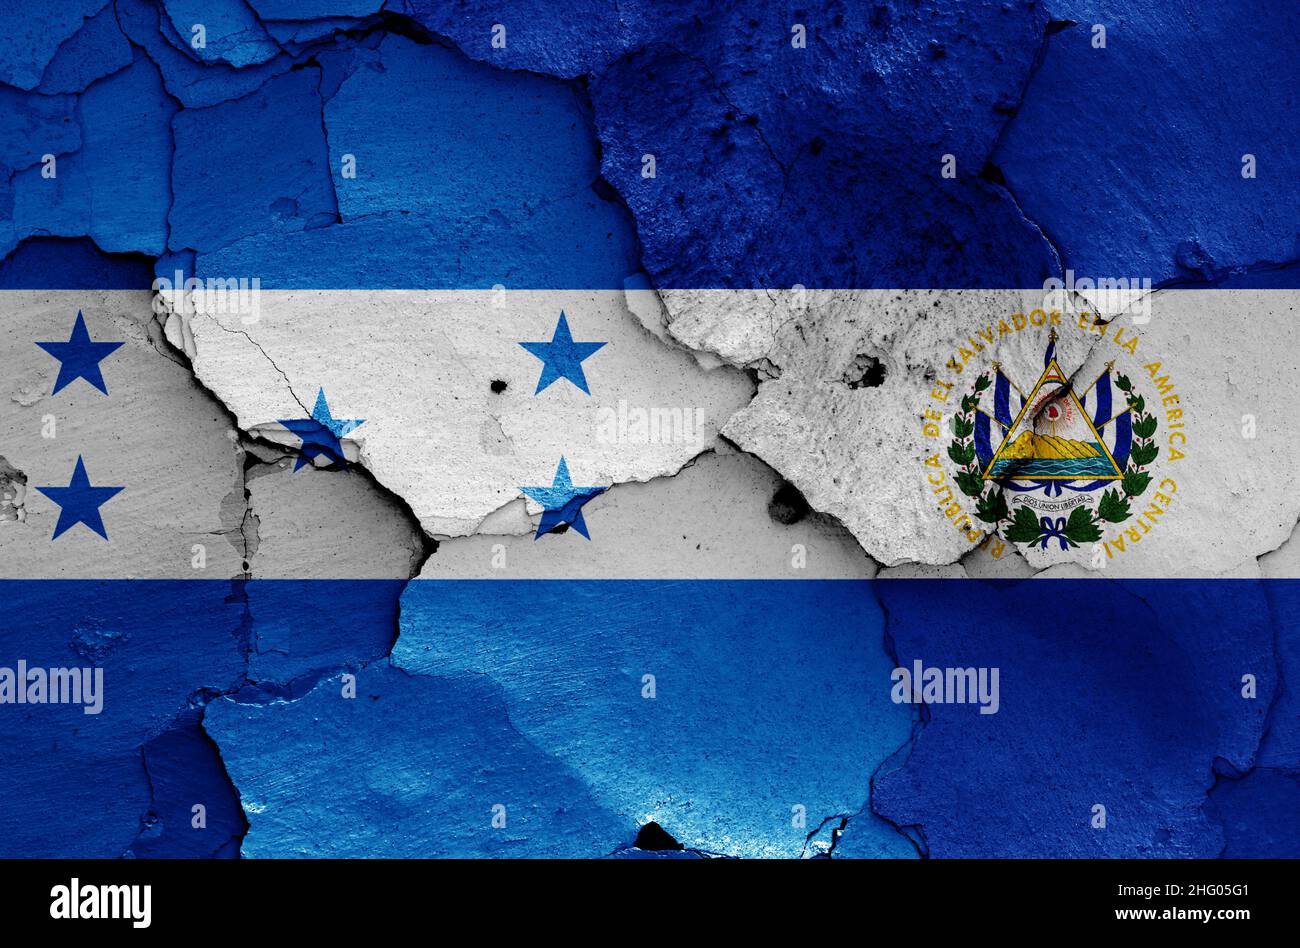 Drapeaux du Honduras et du Salvador peints sur un mur fissuré Banque D'Images